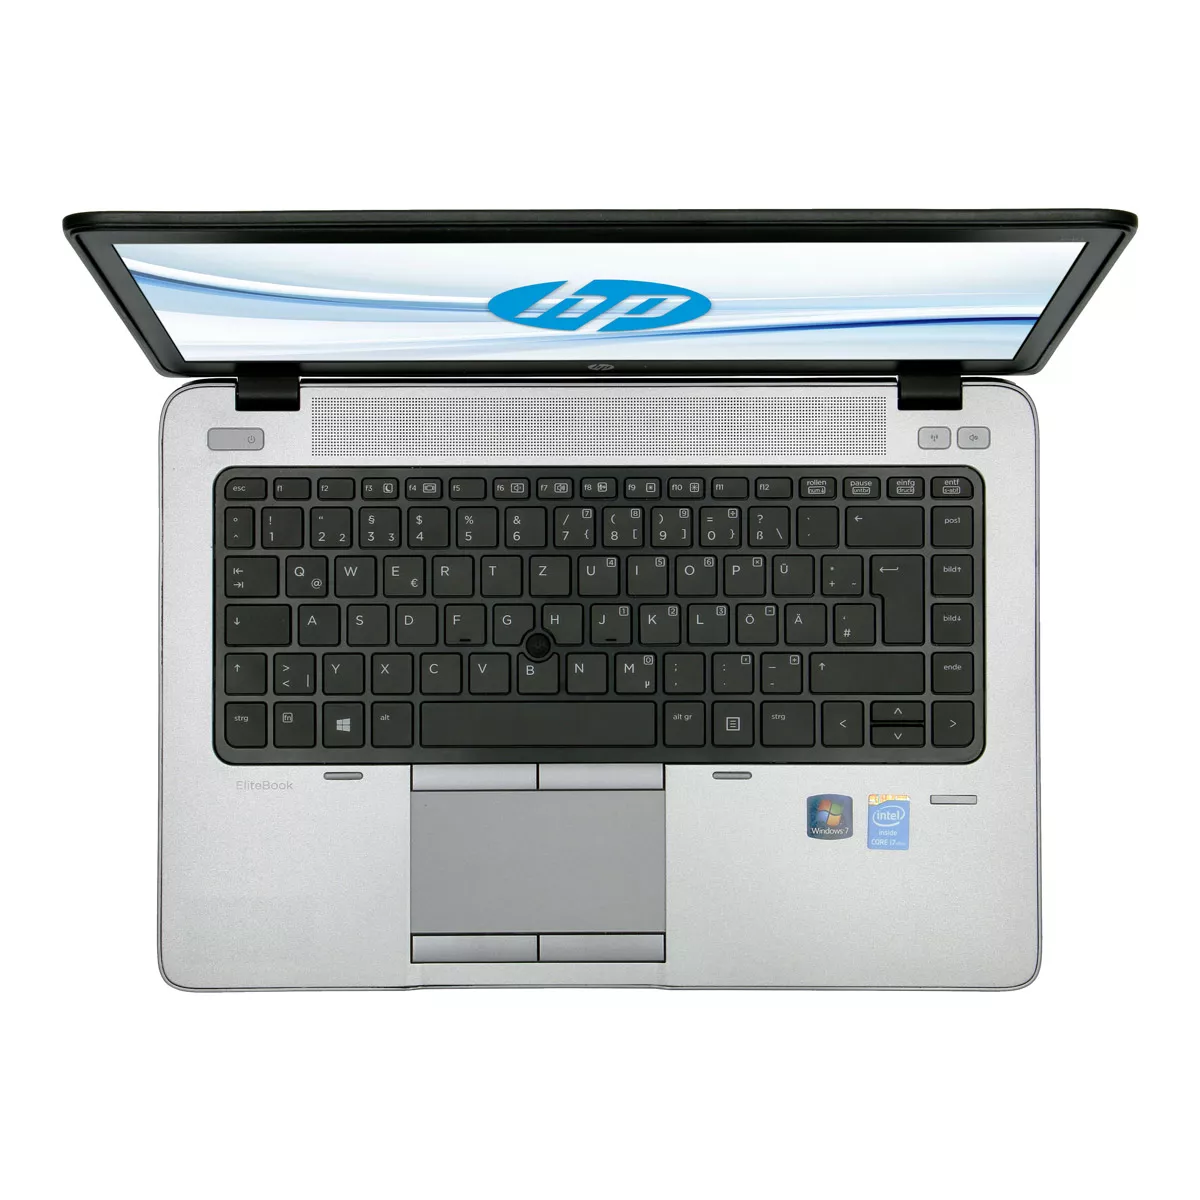 HP EliteBook 840 G2 Core i5 5300U 8 GB 240 GB SSD Webcam A